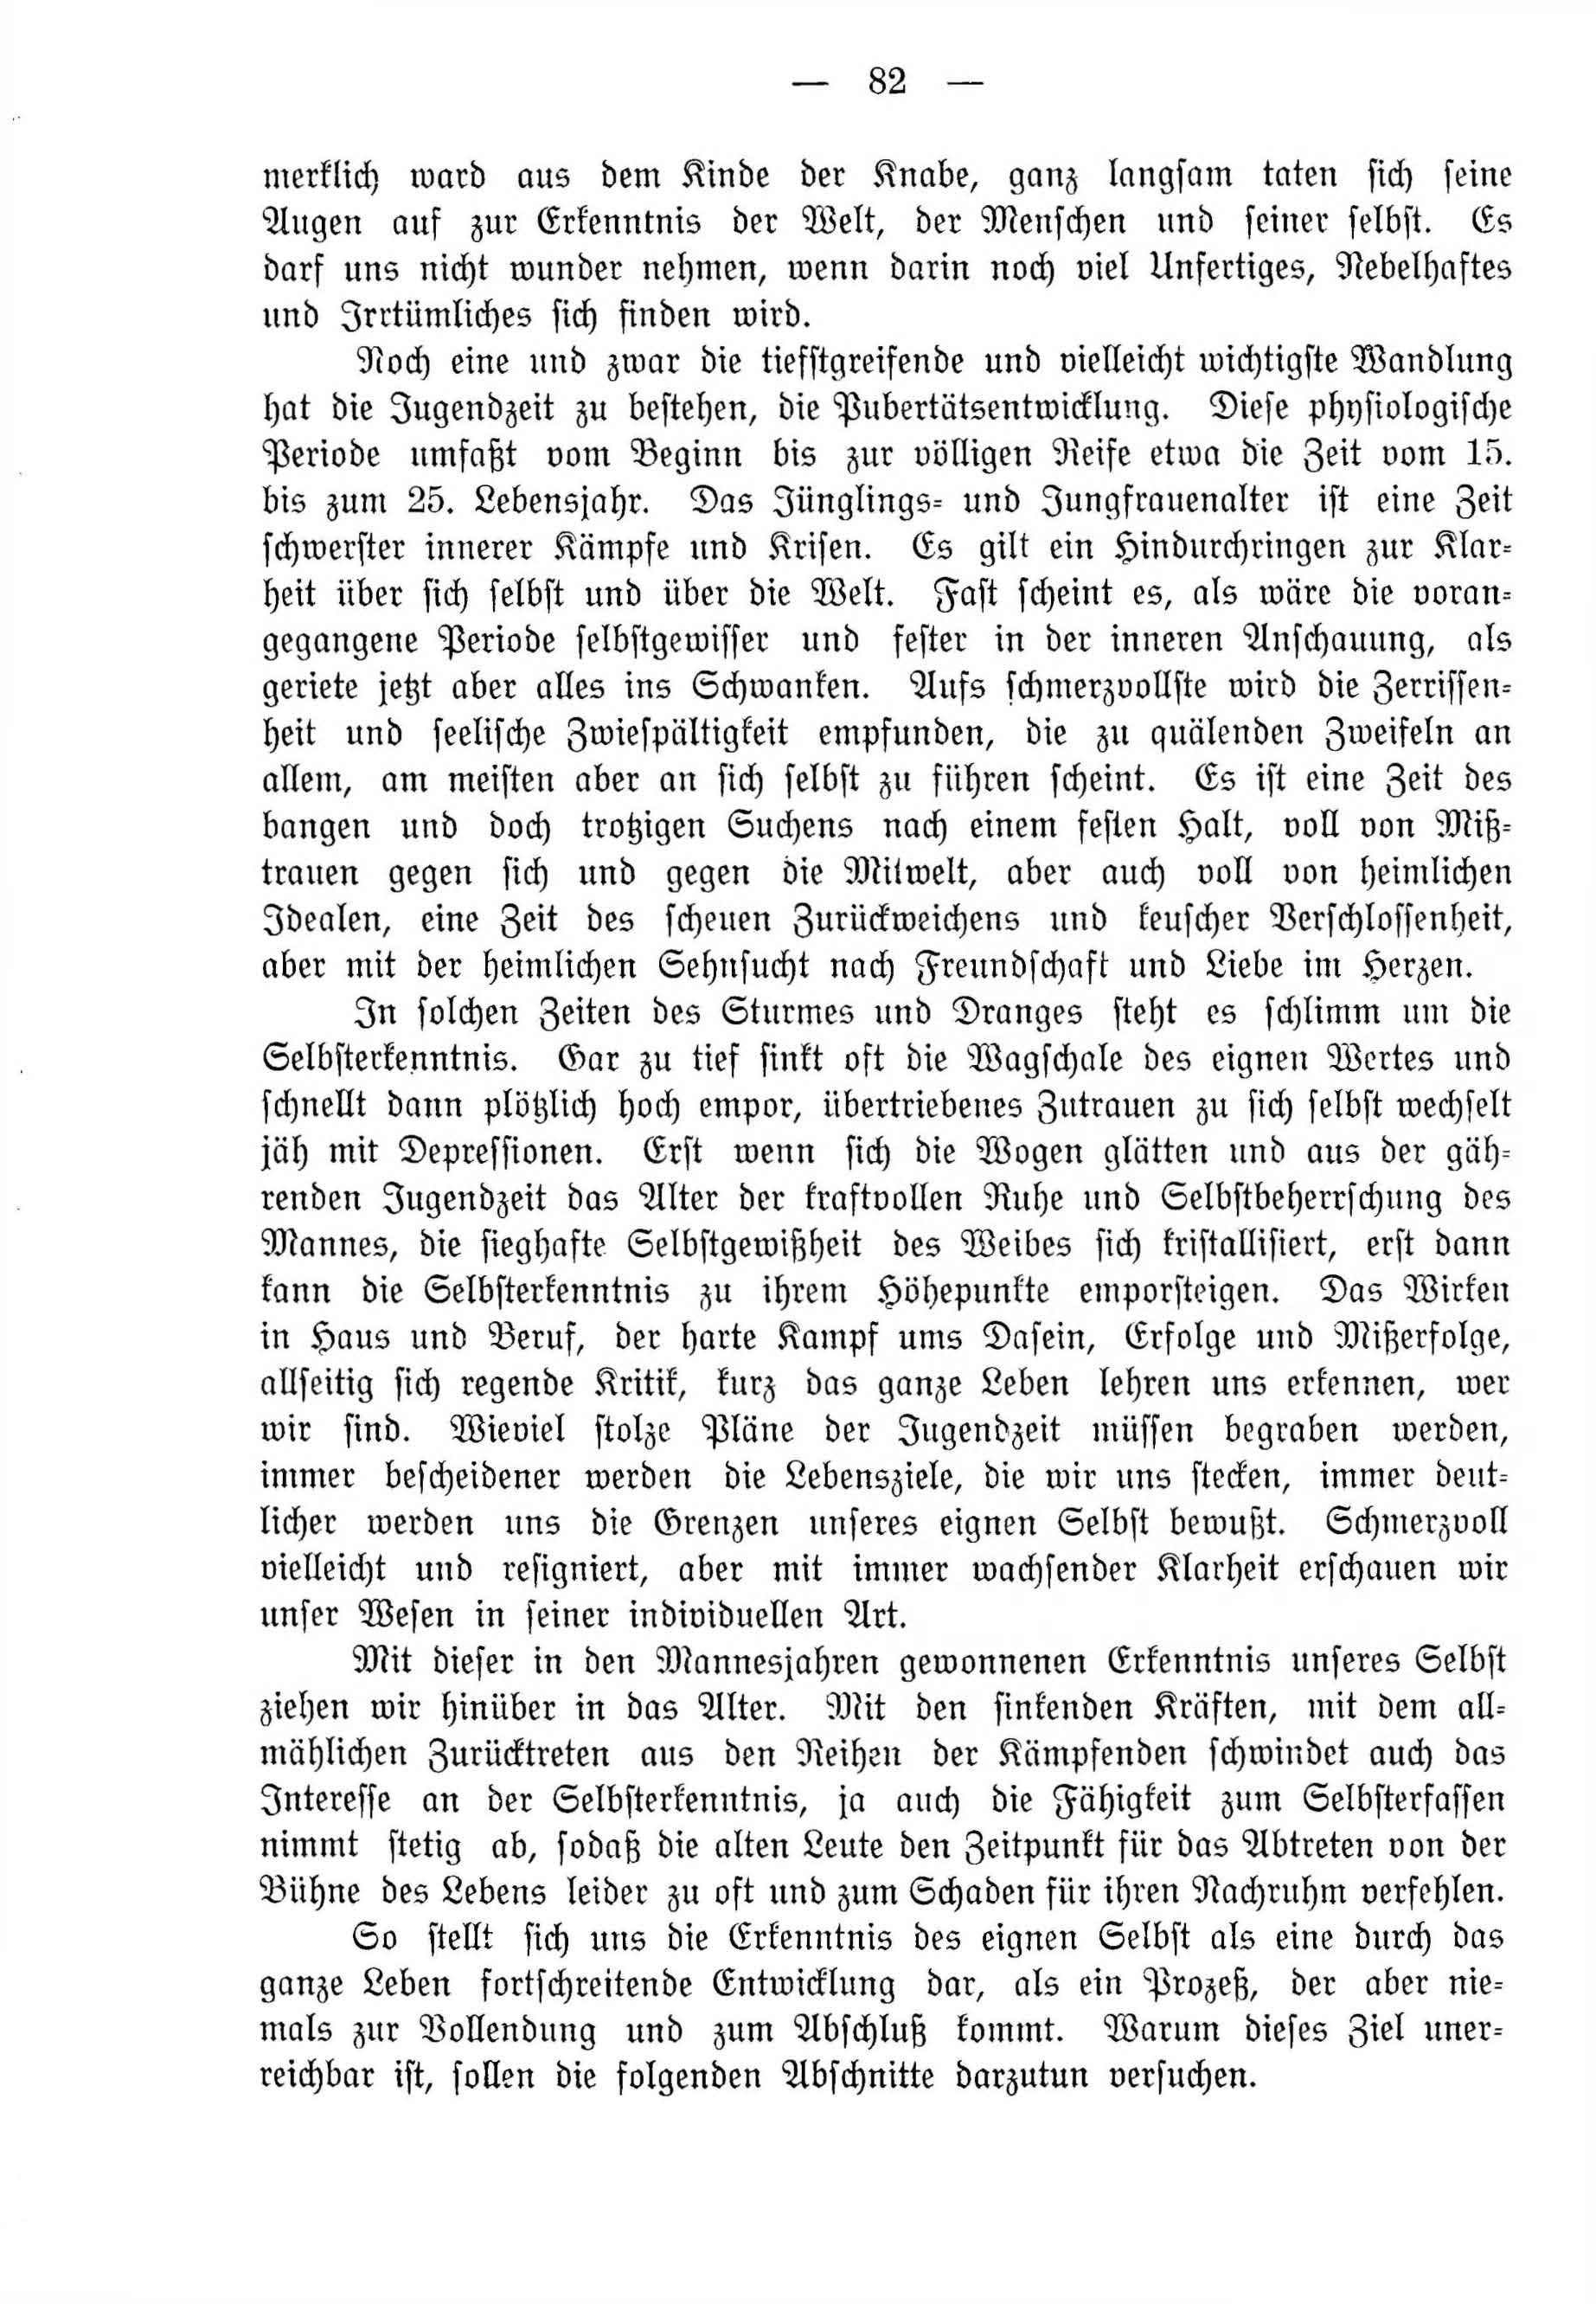 Deutsche Monatsschrift für Russland [4] (1915) | 82. (82) Main body of text